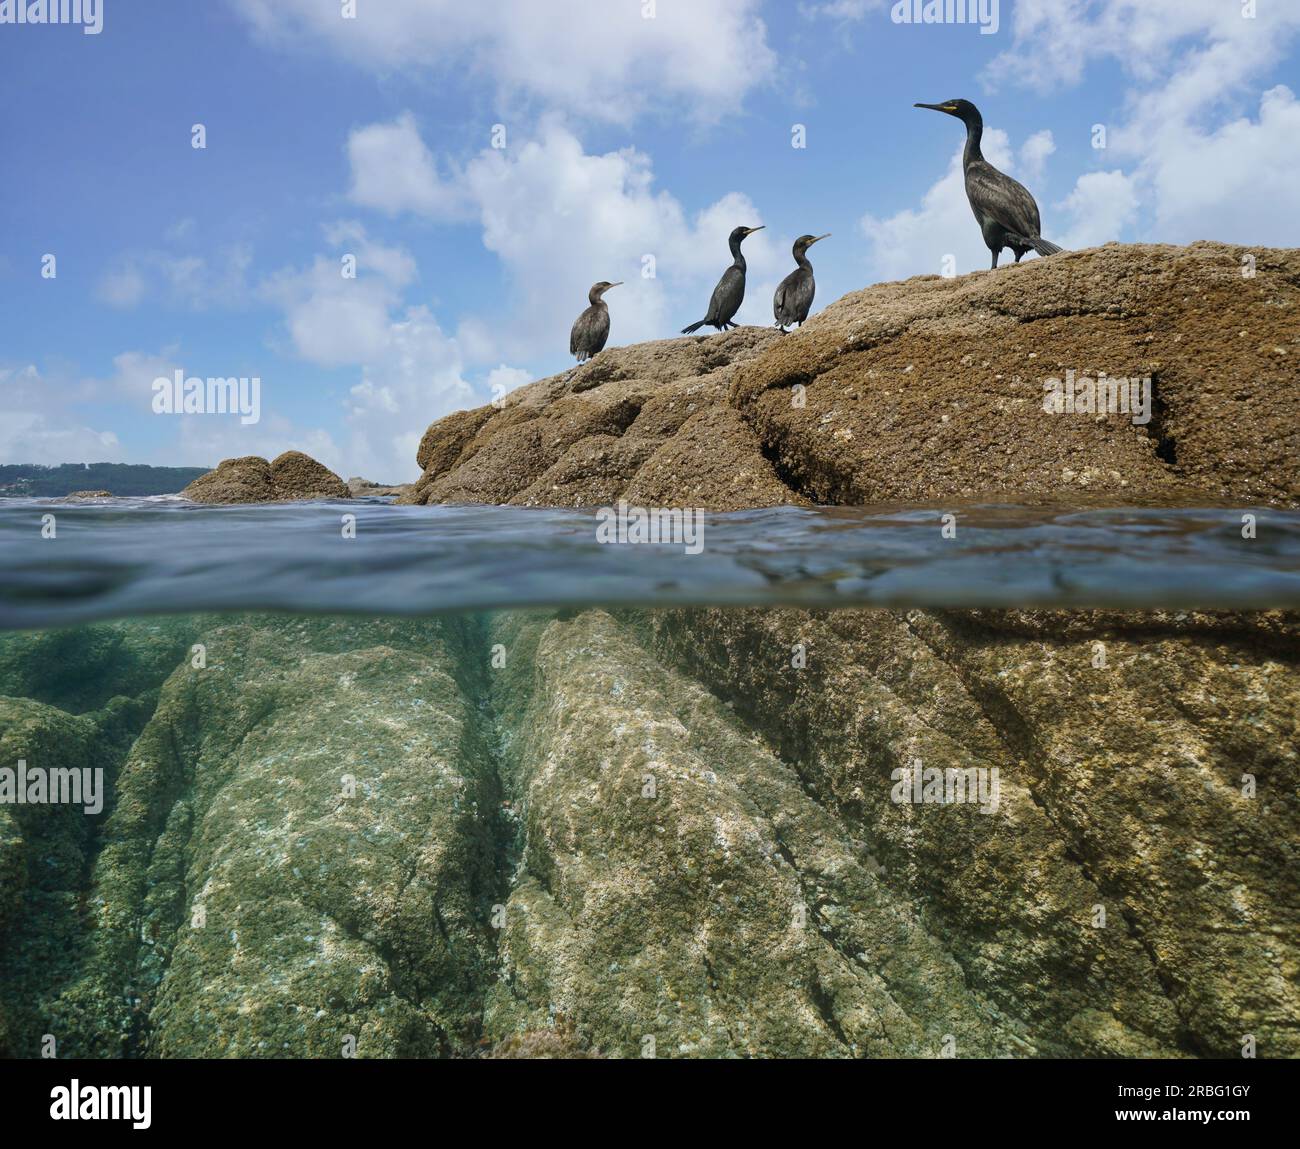 Oiseaux cormorans sur un rocher au bord de la mer, vue partagée sur et sous la surface de l'eau, océan Atlantique, Espagne, Galice Banque D'Images